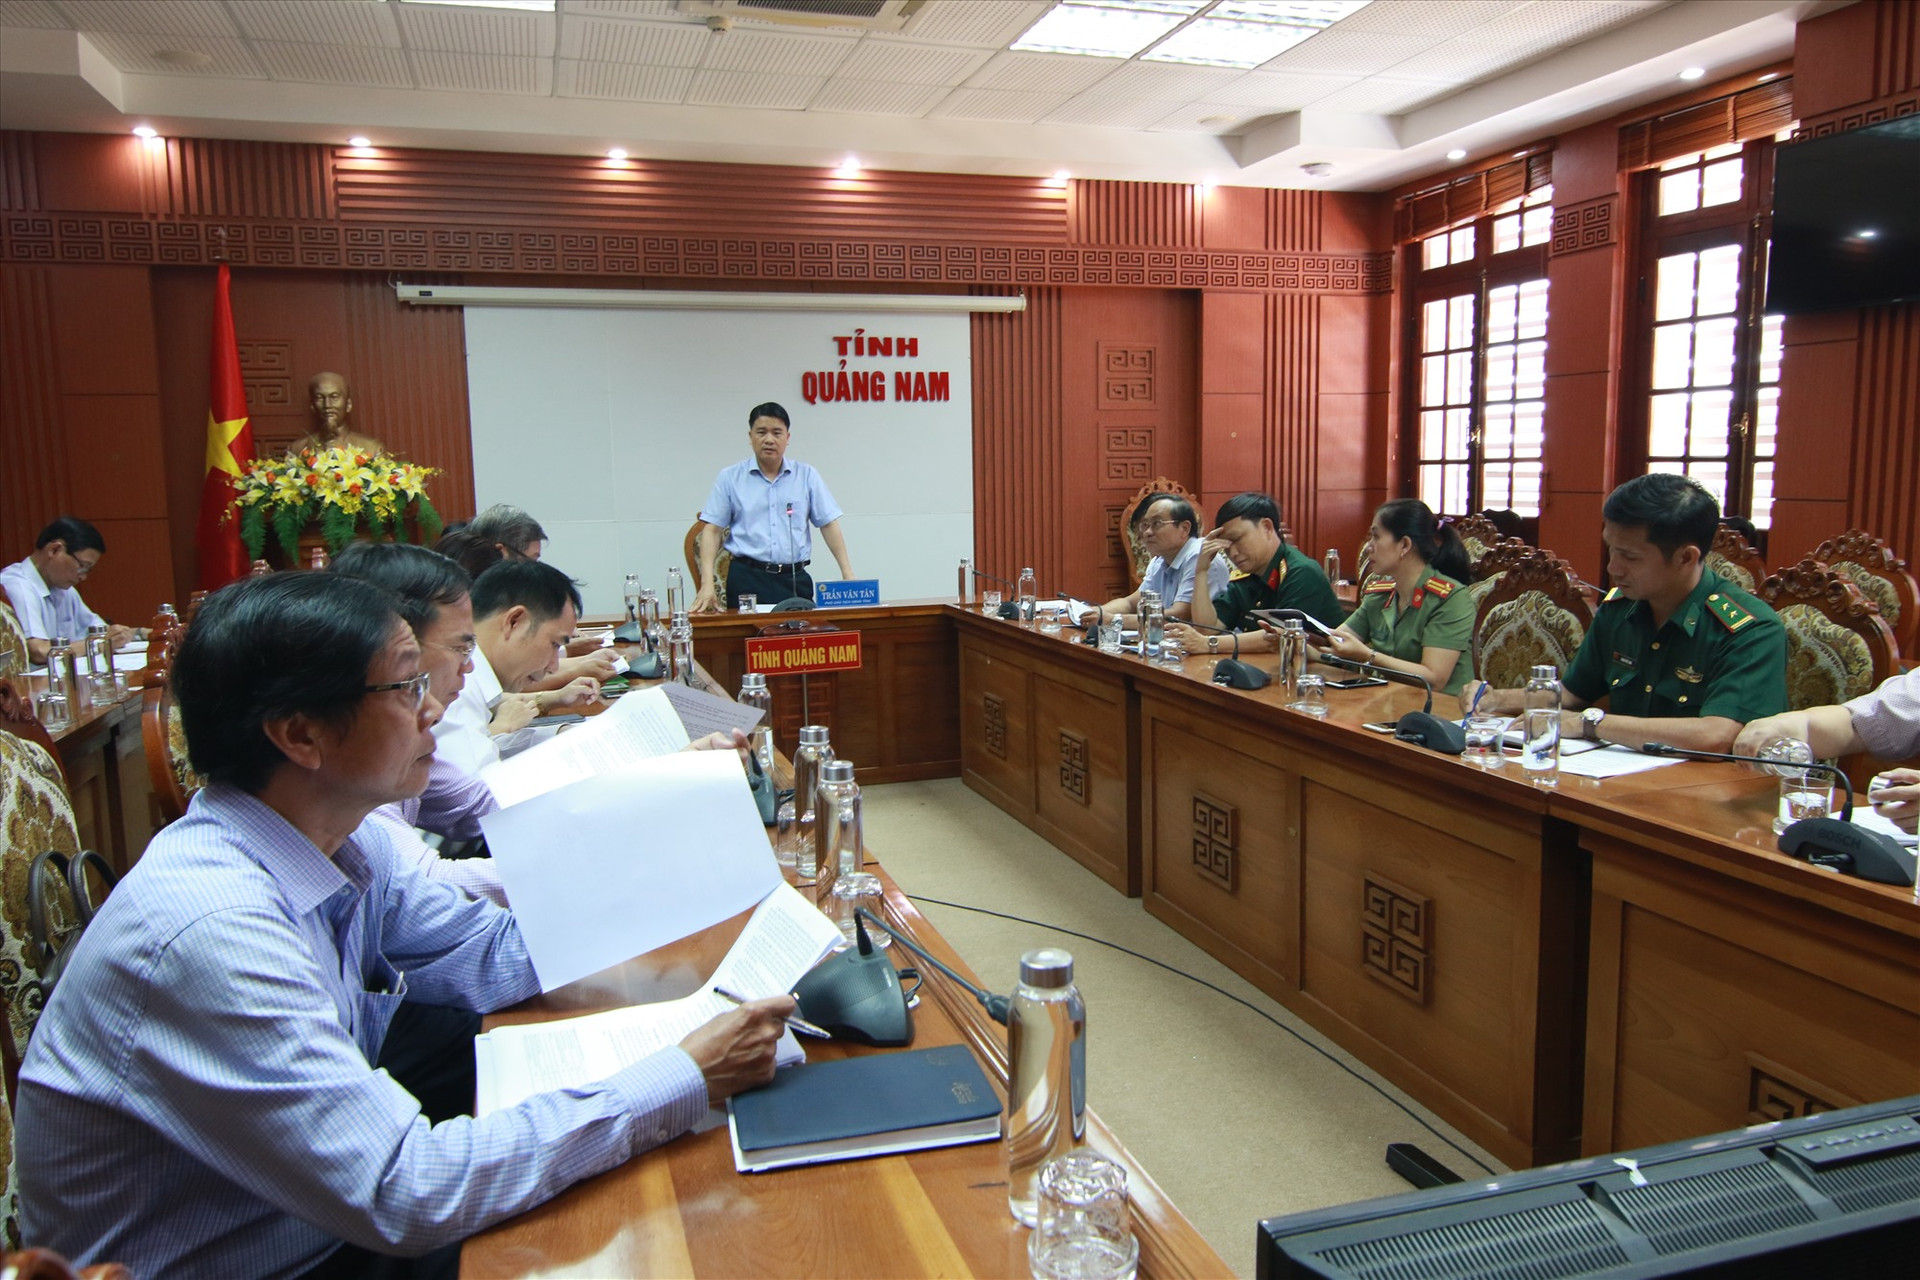 Phó Chủ tịch UBND tỉnh Trần Văn Tân khẳng định, phải song hành nhiệm vụ phát triển sản xuất kinh doanh với phòng chống dịch bệnh. Ảnh: T.C